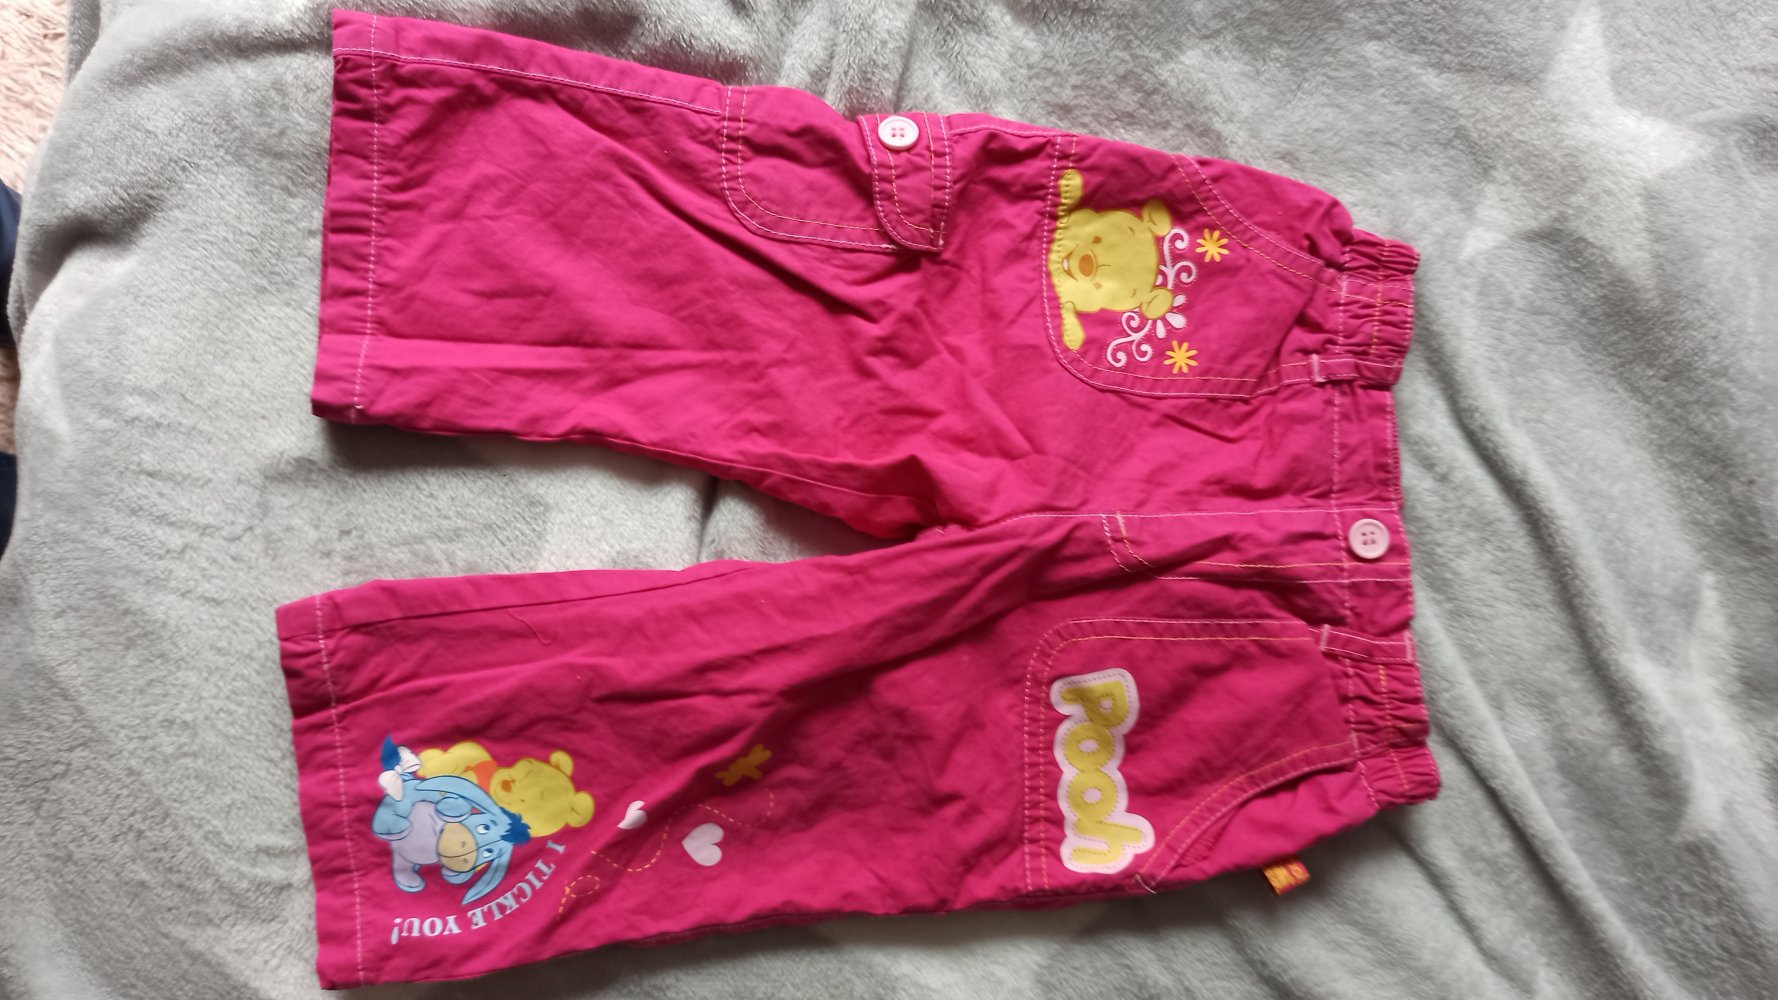 Kinderhose pink mit Winni Pooh 